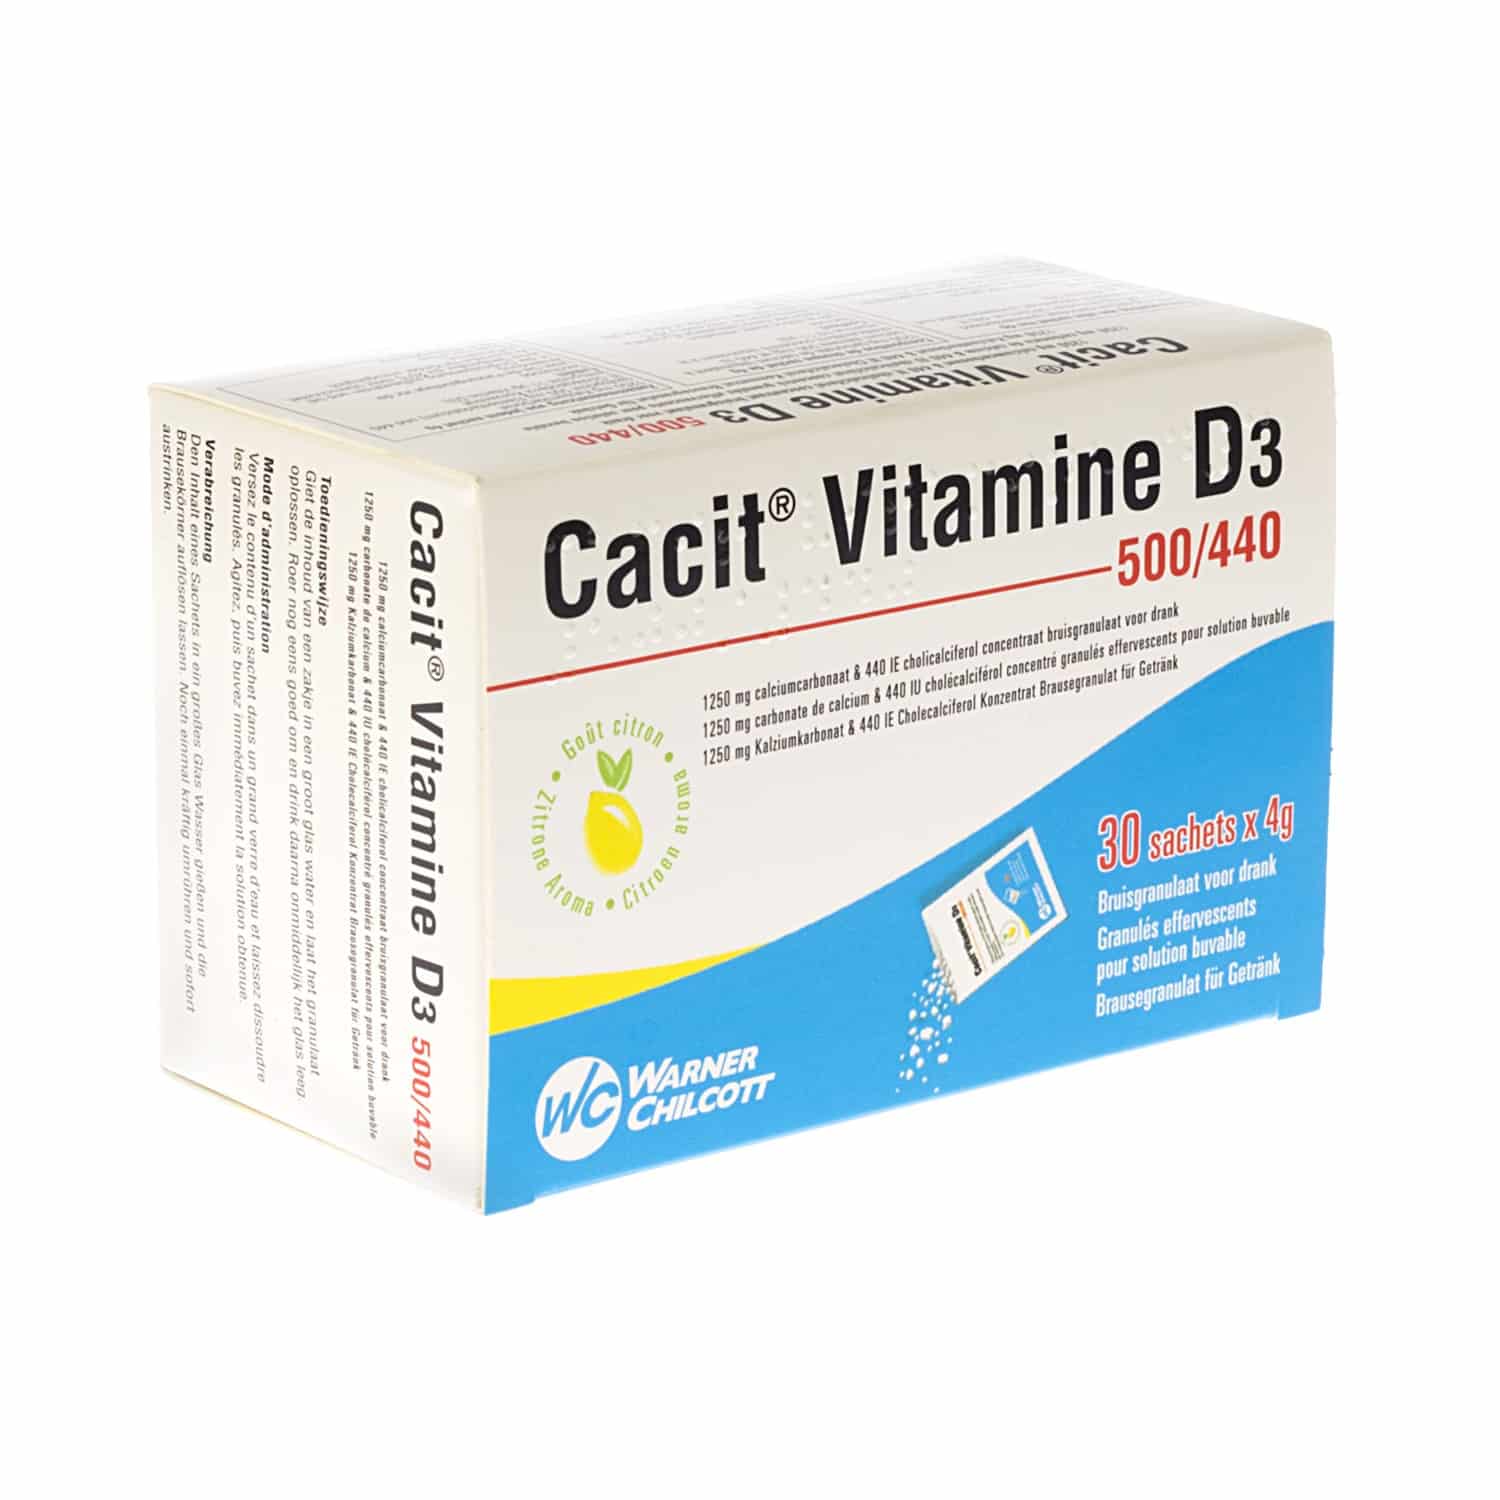 Cacit Vit D3 500/440